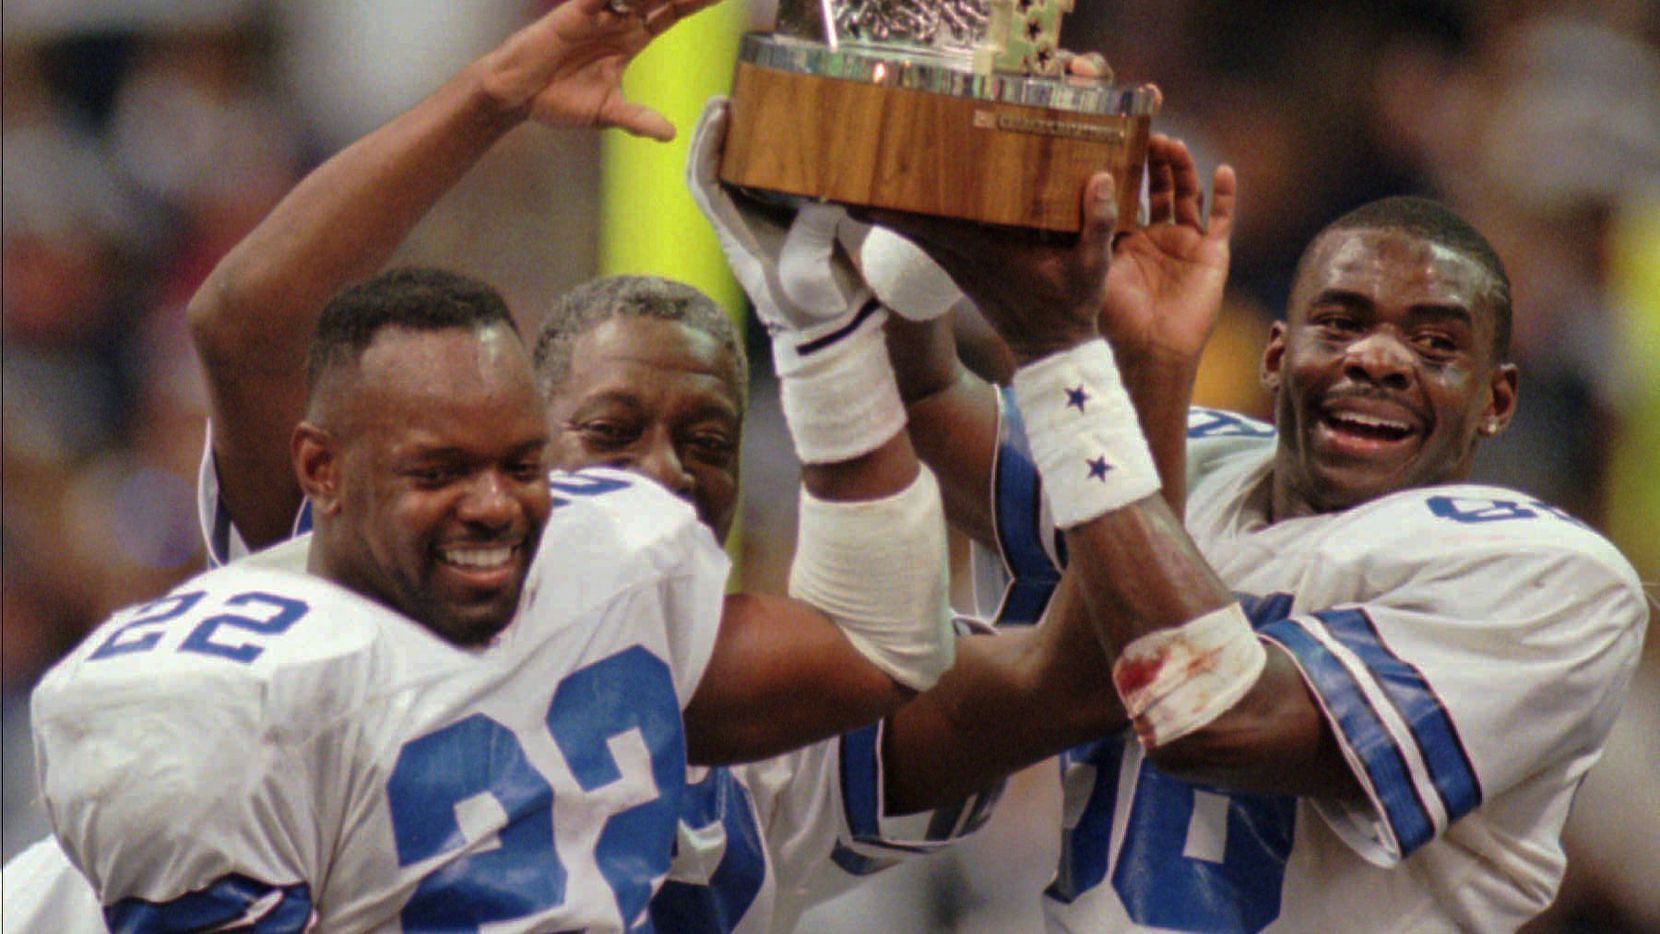 Dallas Cowboys win NFC Championship in 1995 season